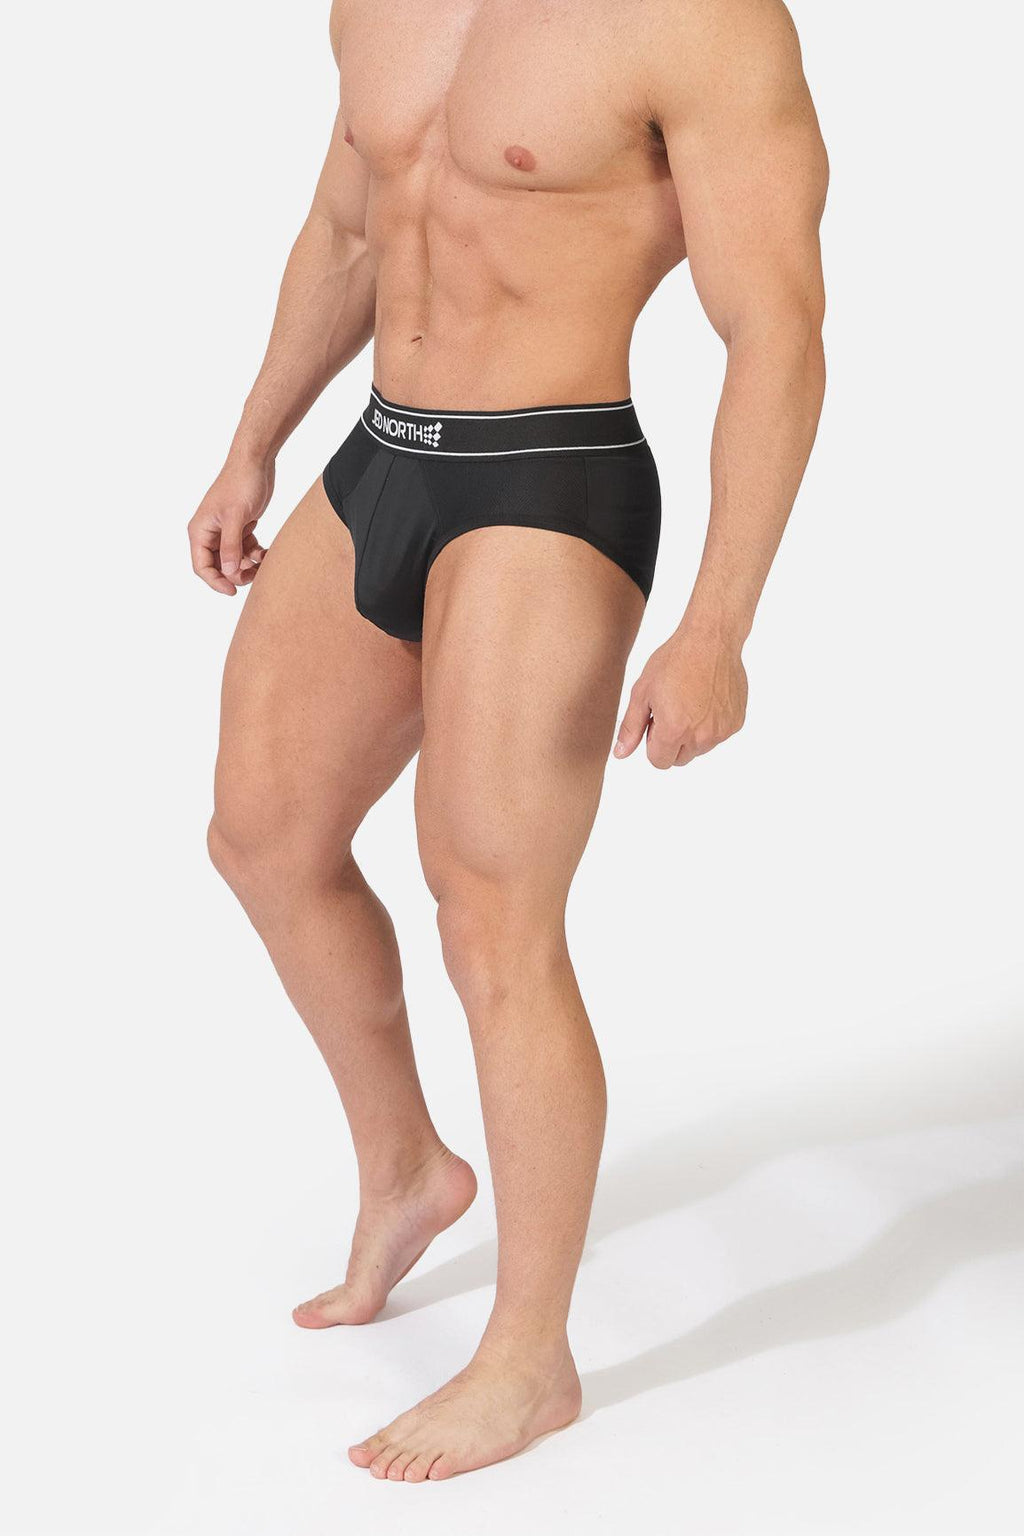 Performance Underwear for Men  Bodybuilding & Fitness Gym Wear